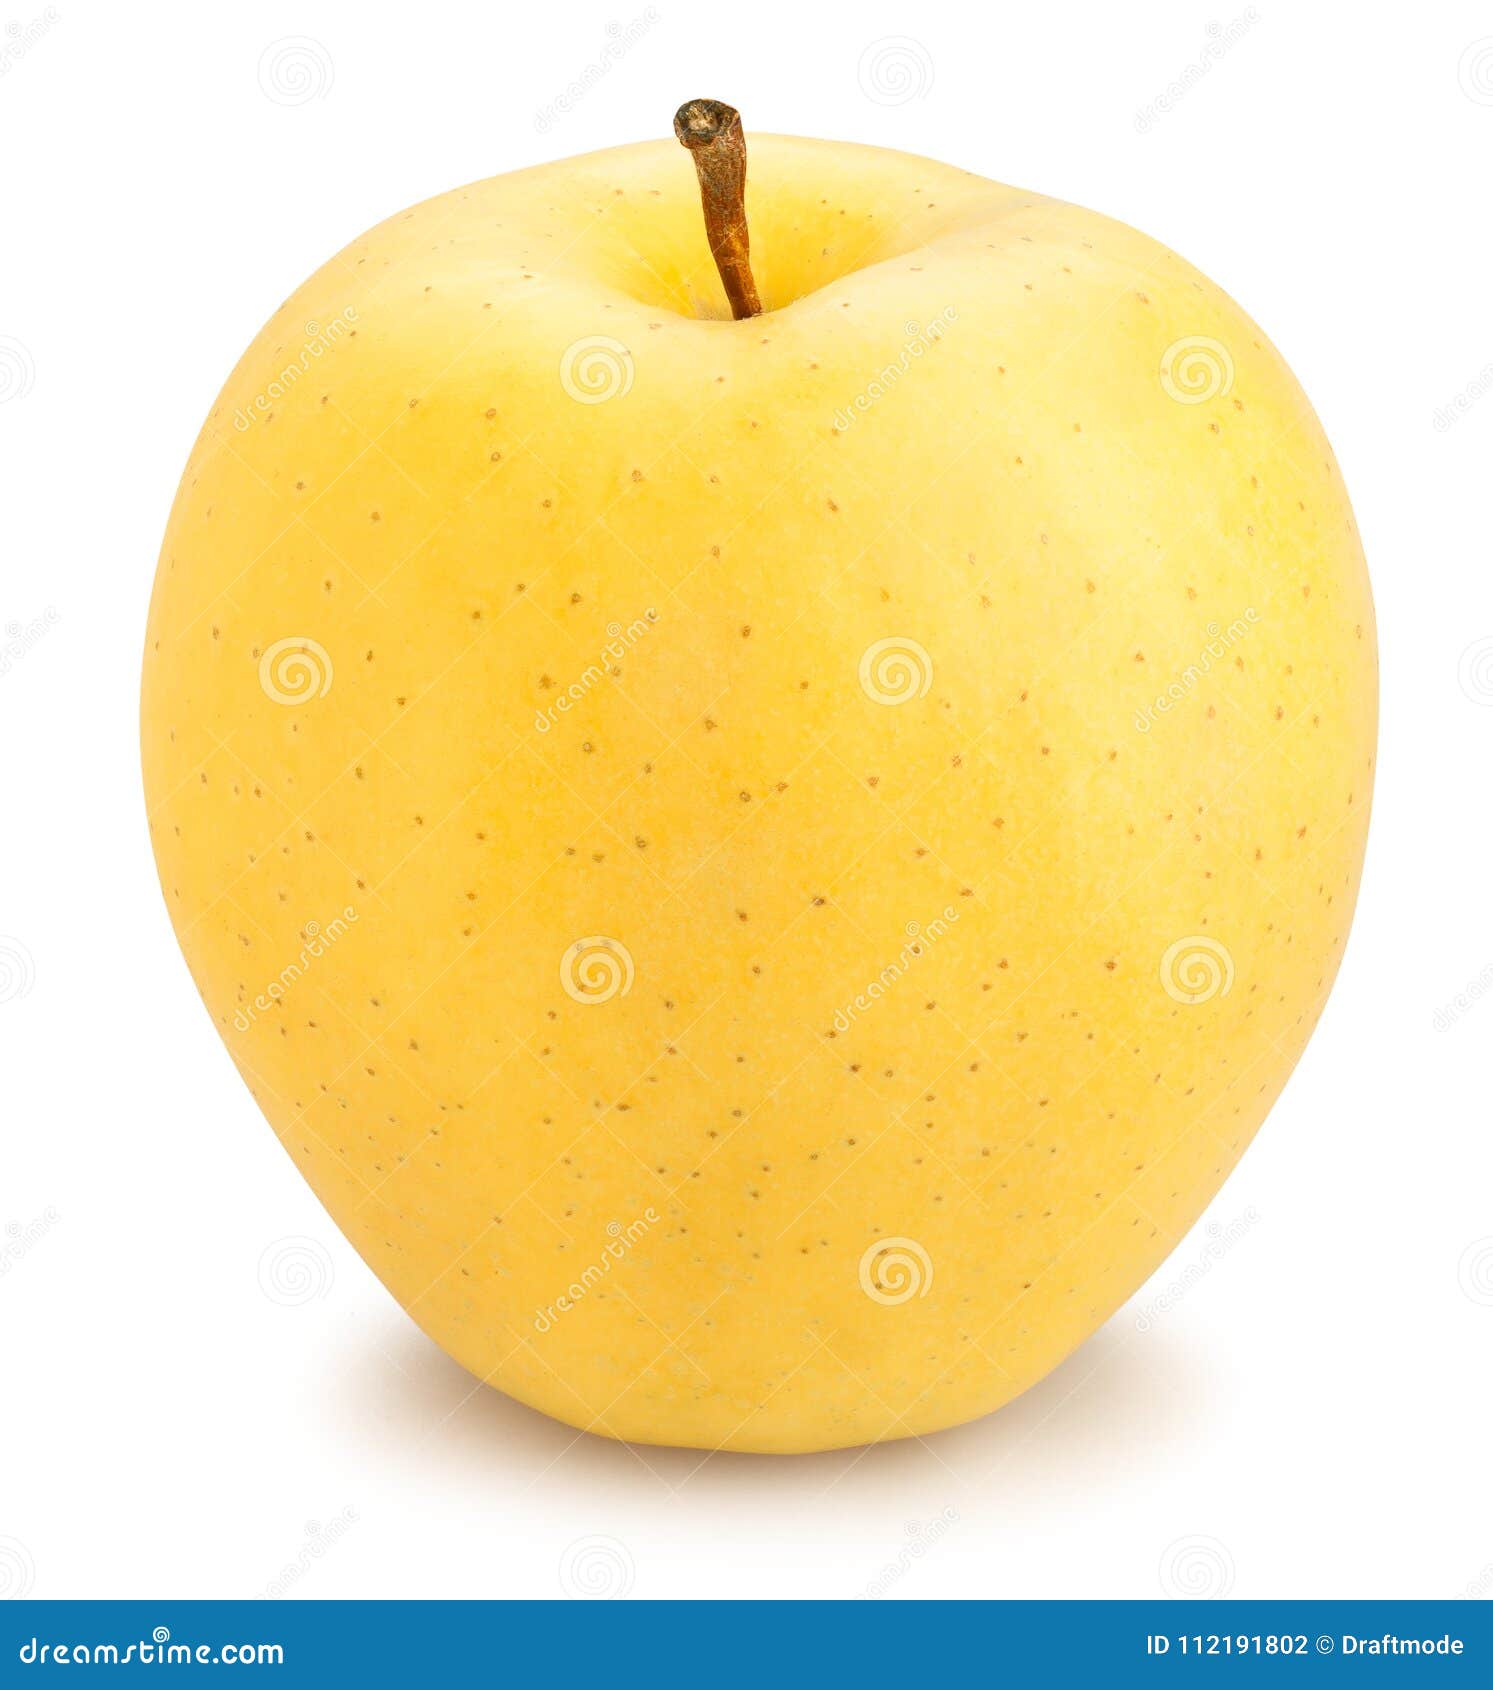 Яблоки желтые